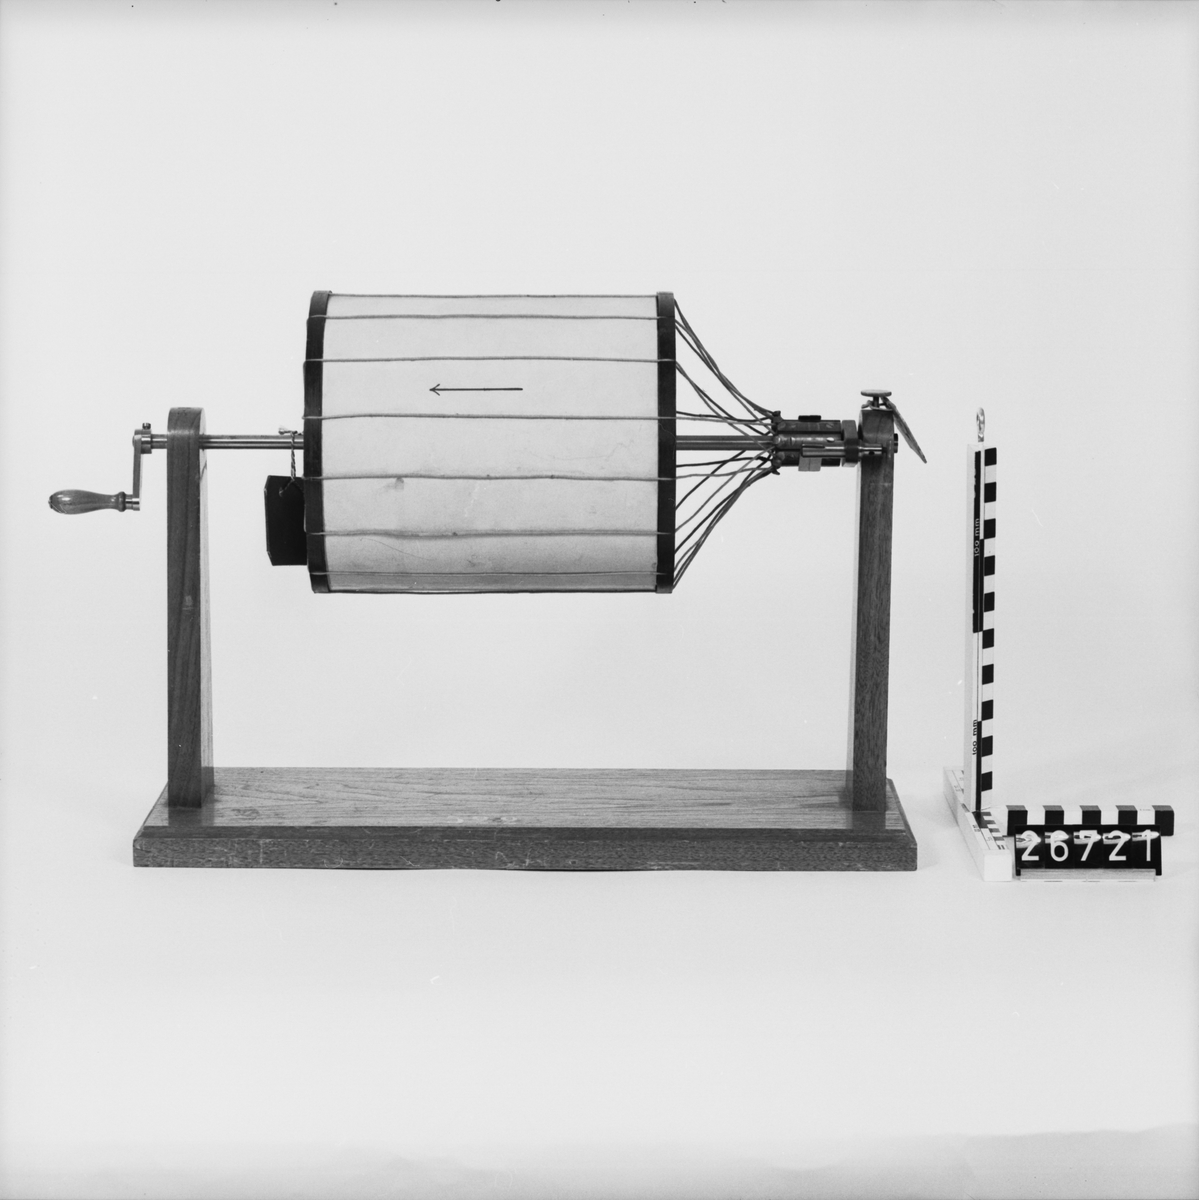 Modell till truminduktor av trä, papp, mässing och stål. Induktorn är monterad på ett stativ av trä.